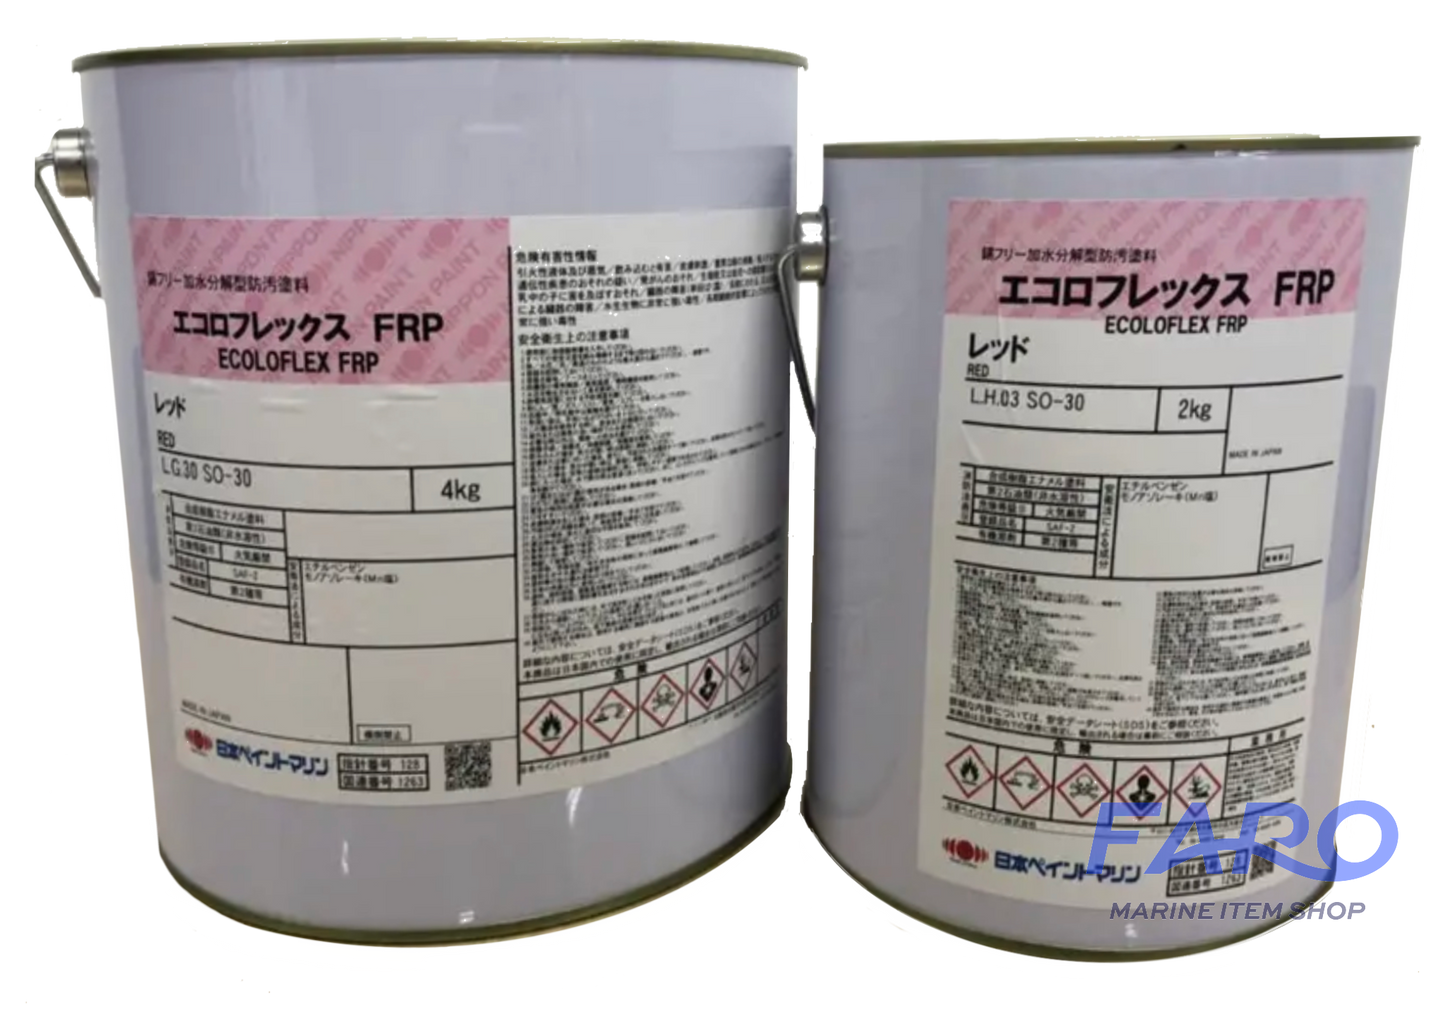 送料無料 日本ペイント うなぎ一番 レトロレッド 4kg 4缶セット うなぎ塗料一番 船底塗料 即日発送も